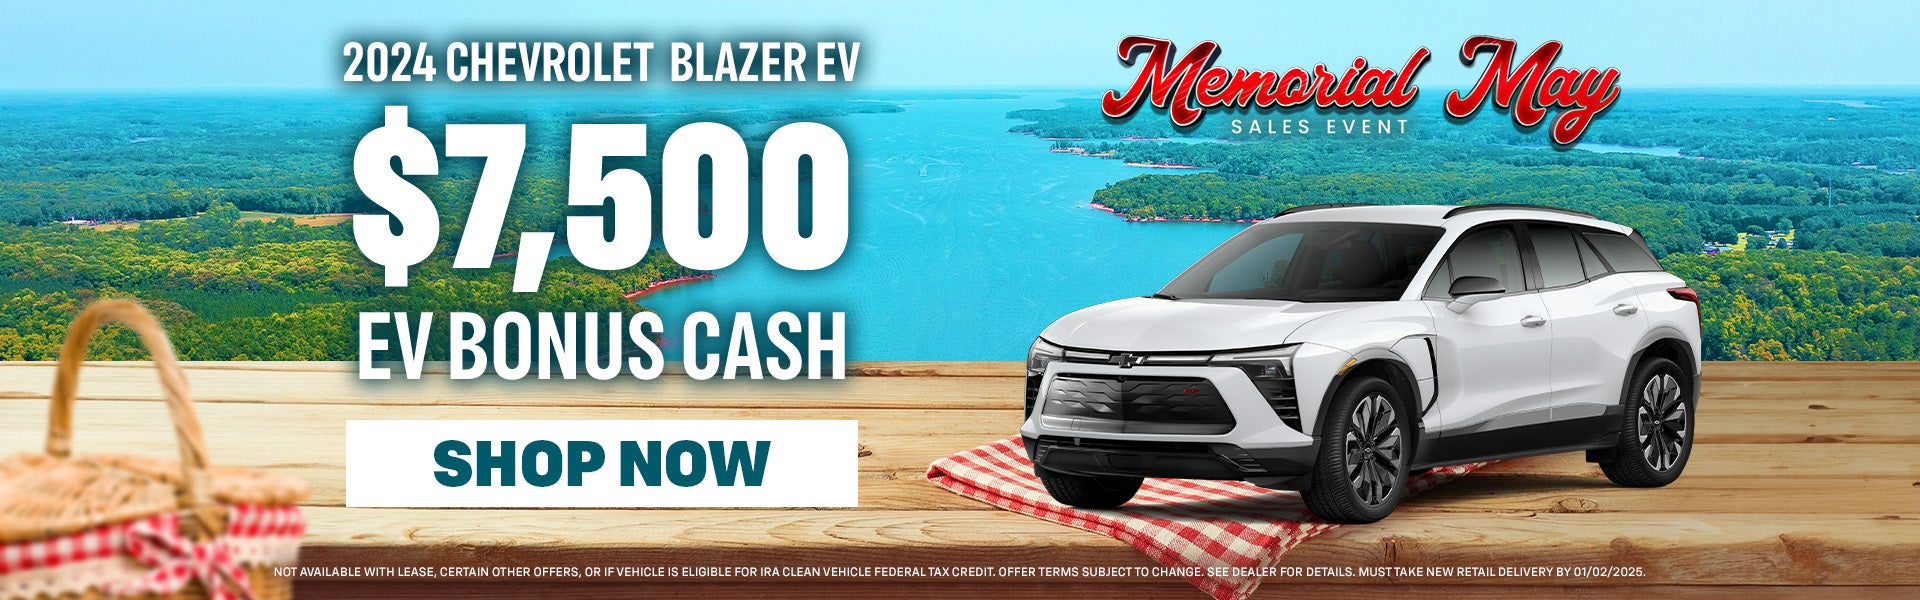 $7,500 EV bonus cash on 2024 Chevrolet Blazer EV